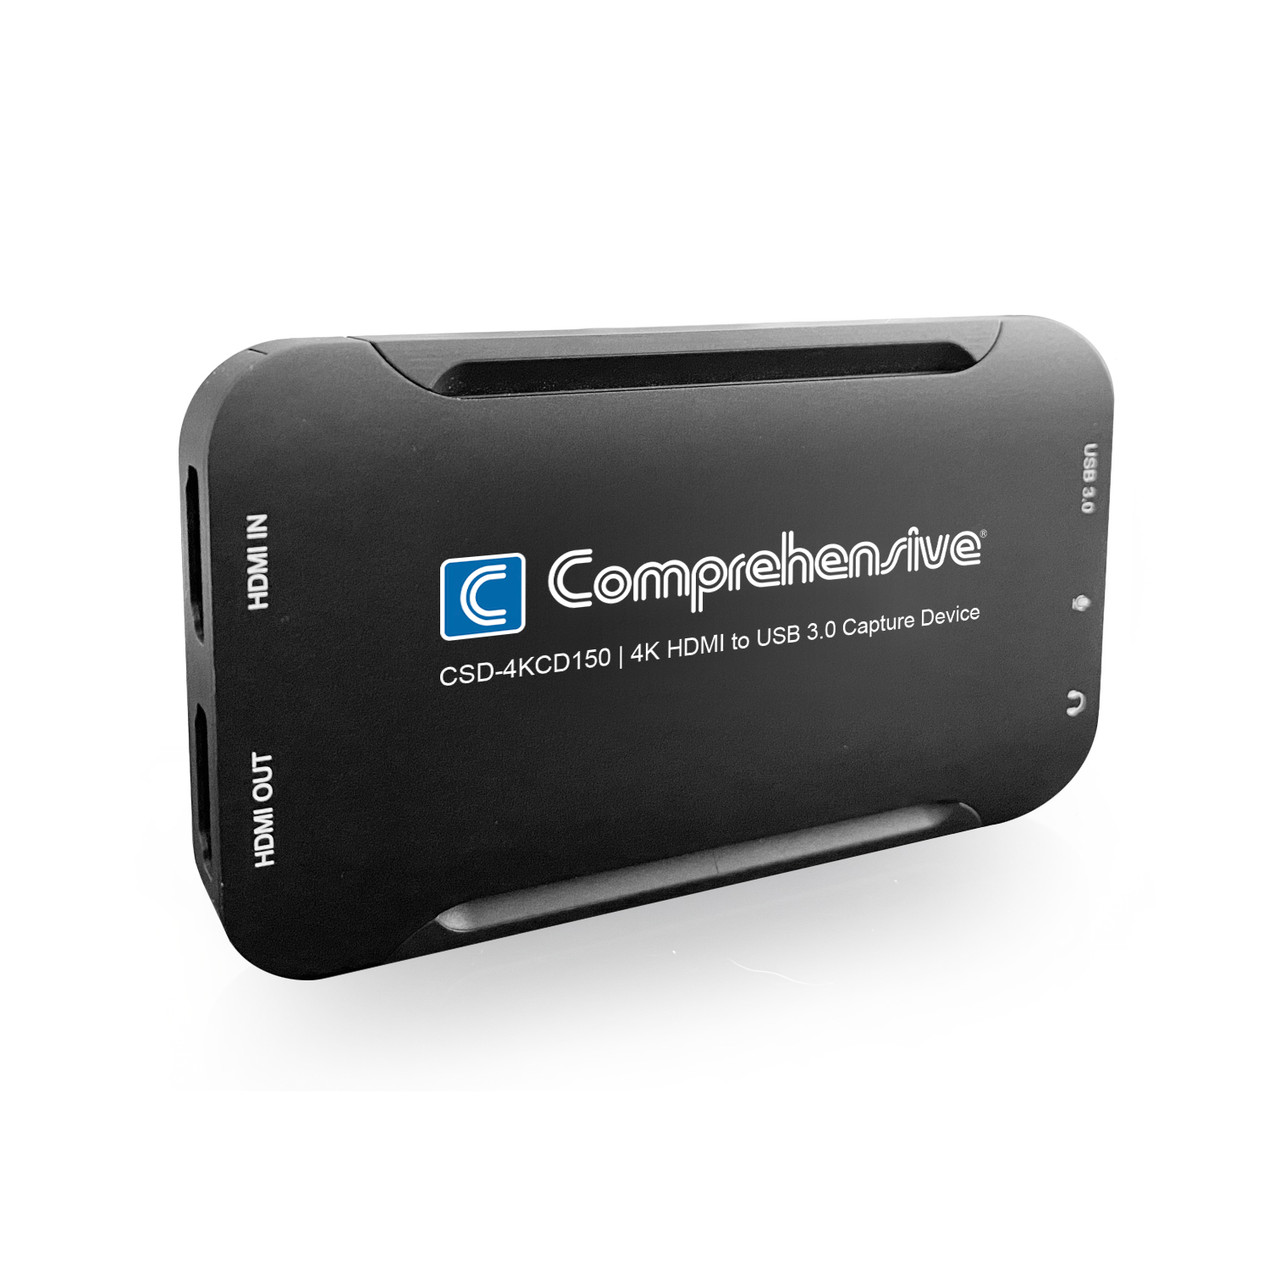 Nouveau convertisseur vidéo portable 4k 1080p usb3.0 compatible